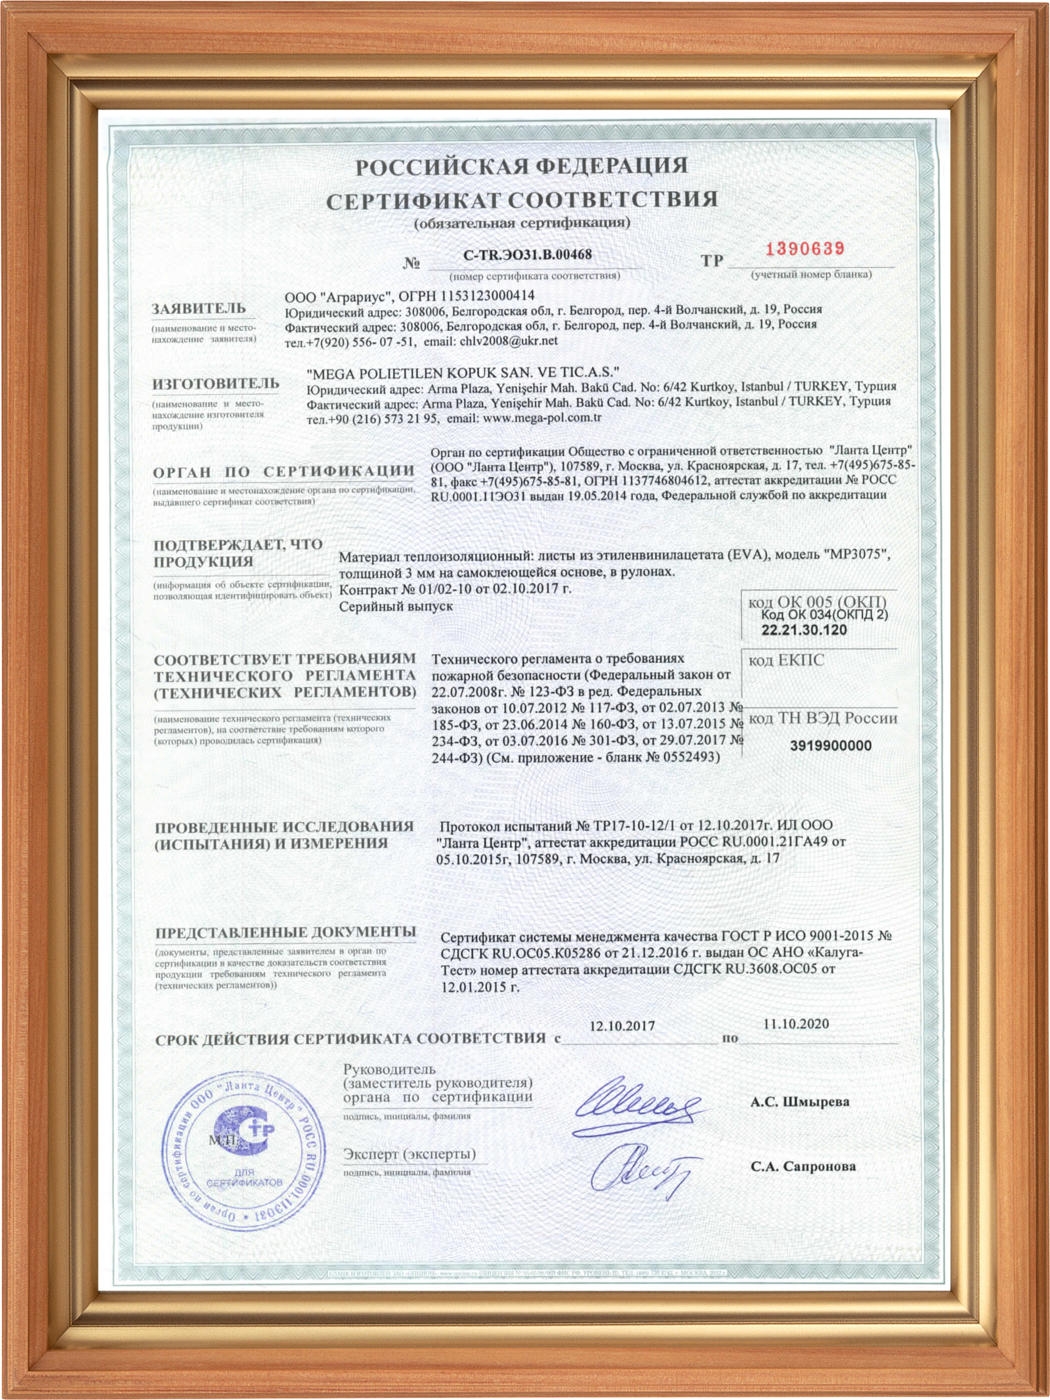 firax мдф огнеупорный огнестойкий сертификат